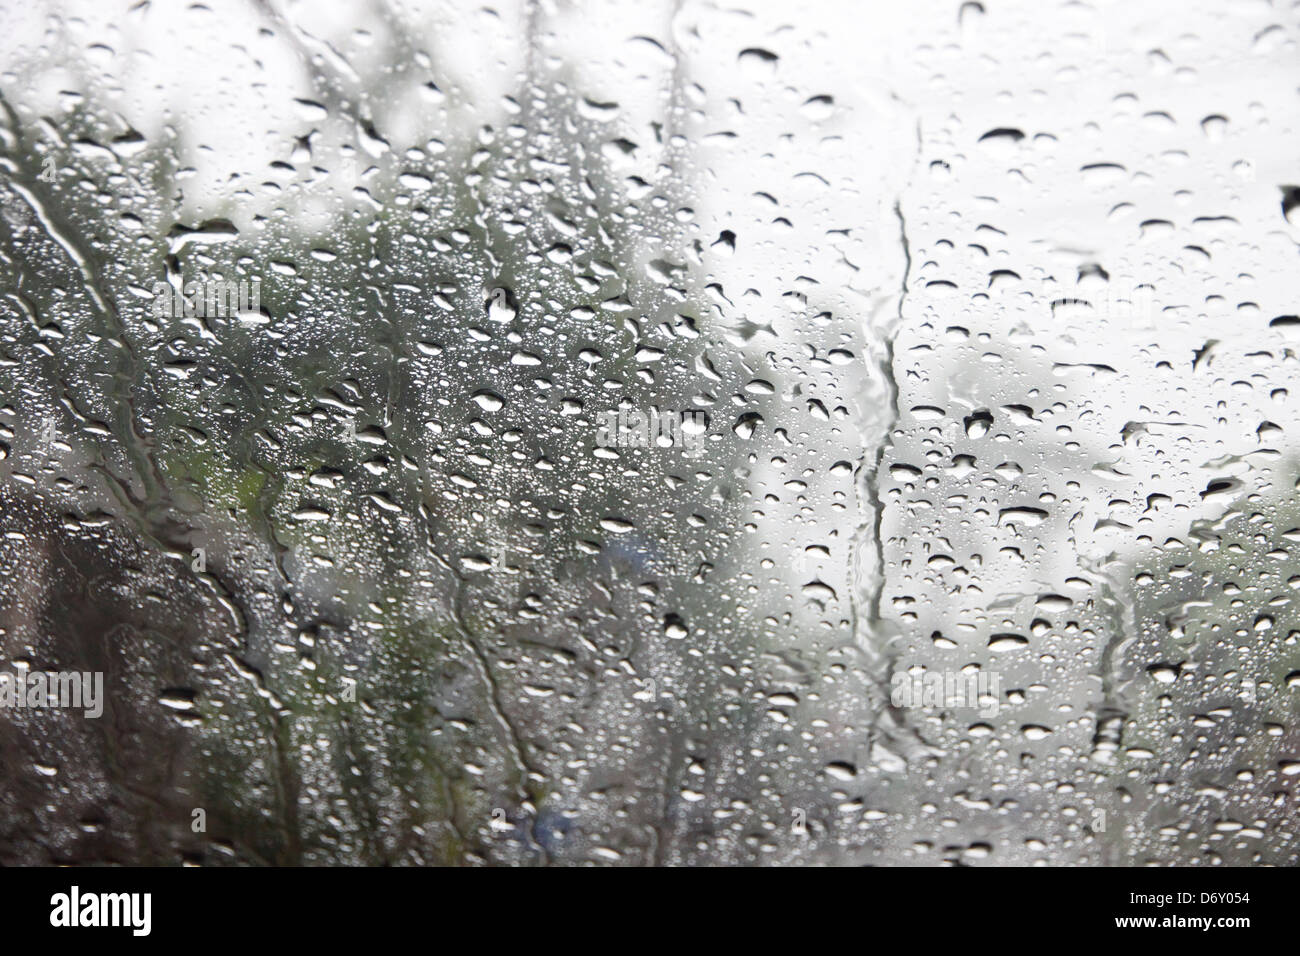 Tau auf den Spiegel, A Windschutzscheibe Spiegel an einem regnerischen Tag. Stockfoto